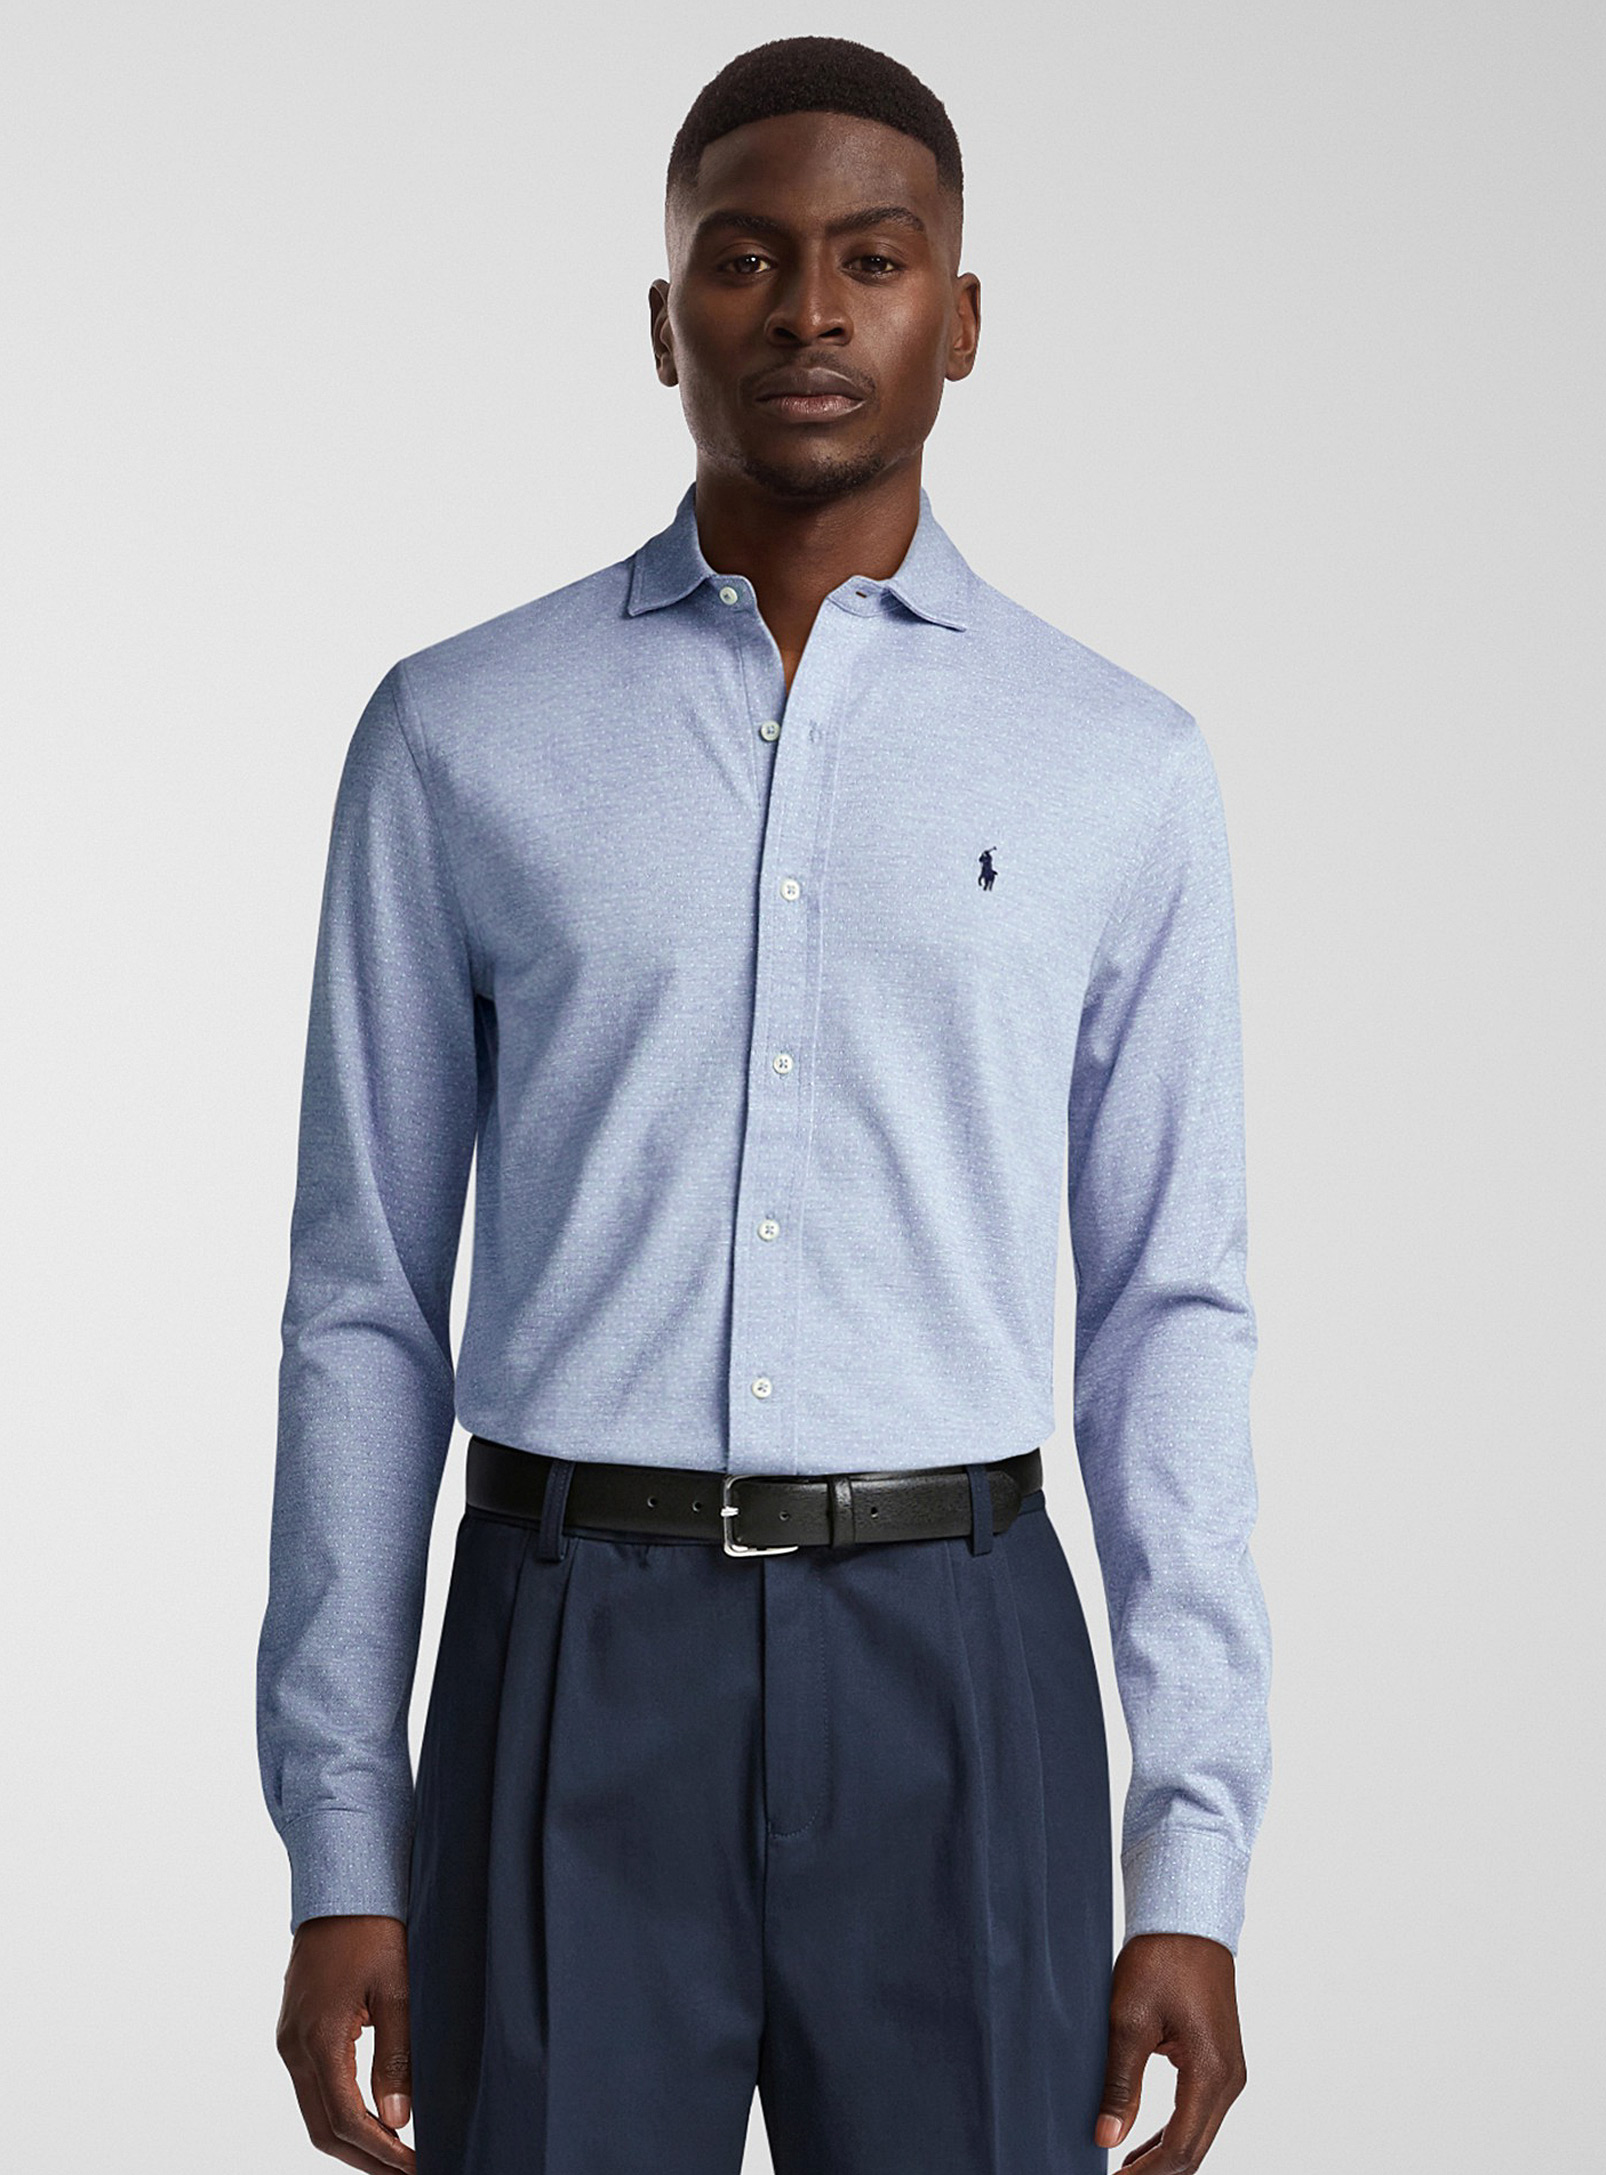 Polo Ralph Lauren - La chemise tricot point jacquard